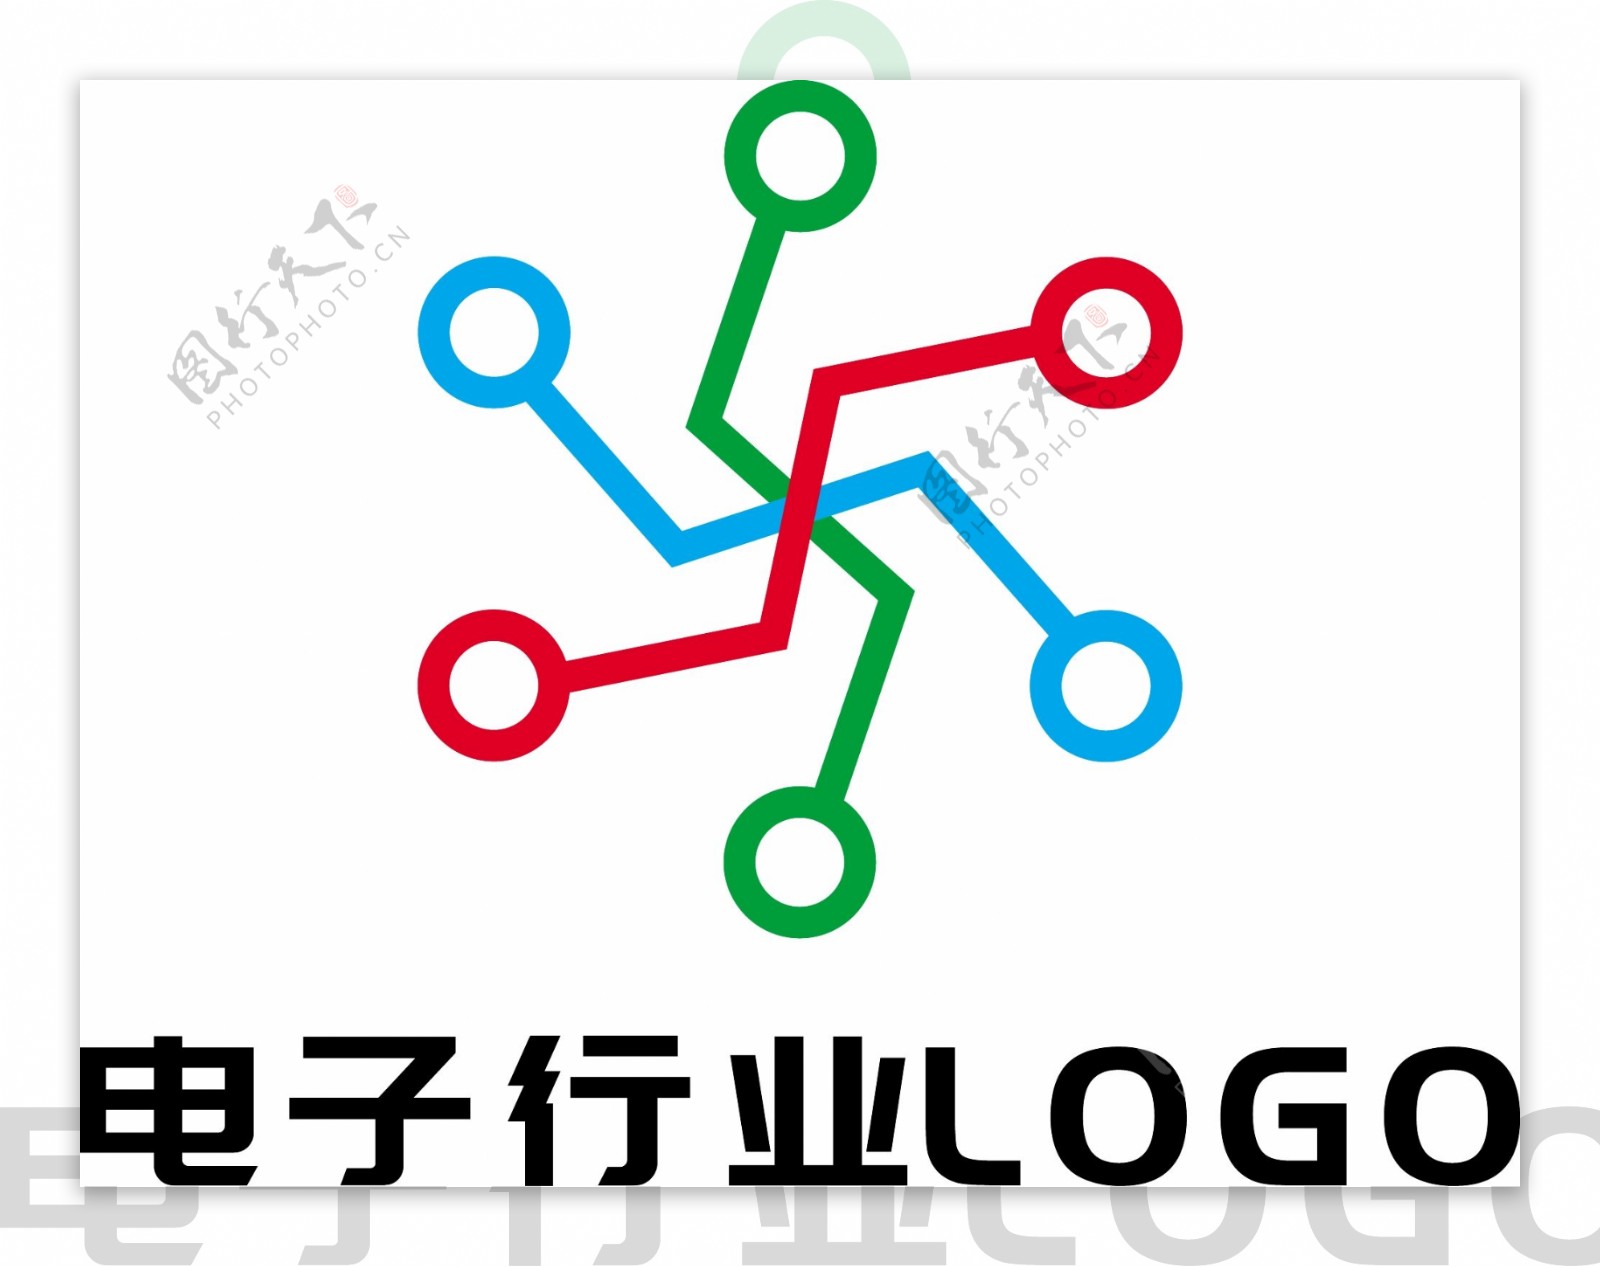 电子行业logo设计